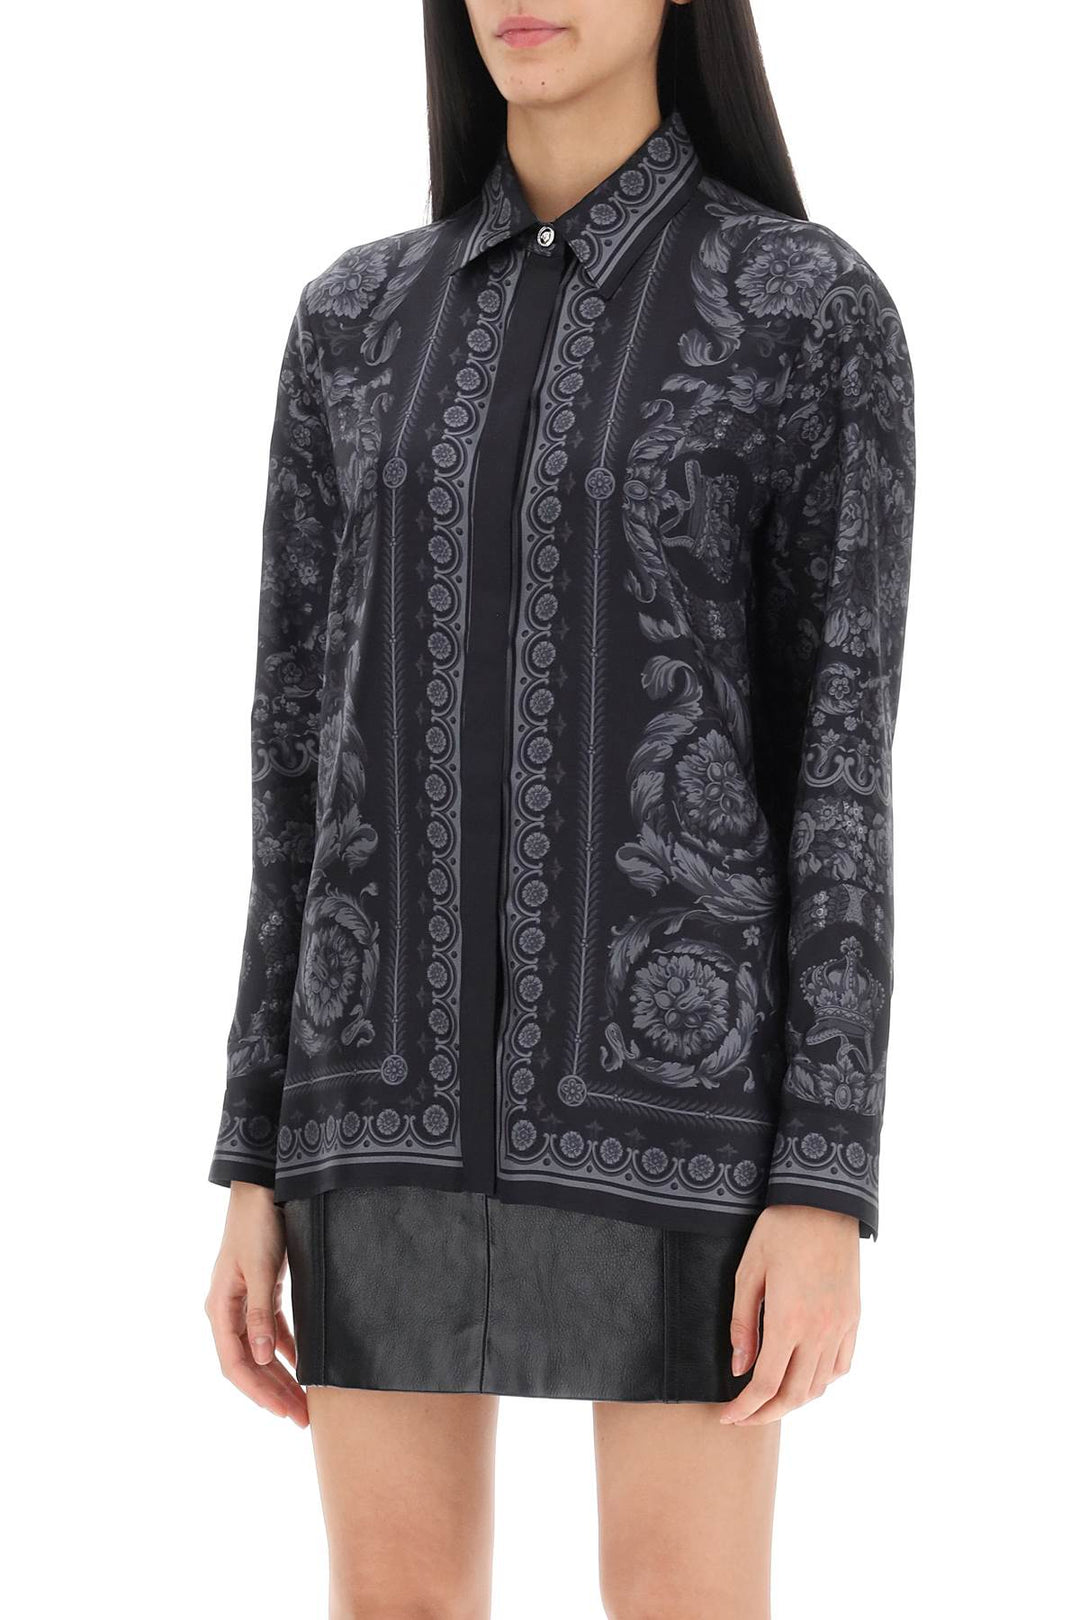 Camicia Barocco In Twill Di Seta - Versace - Donna